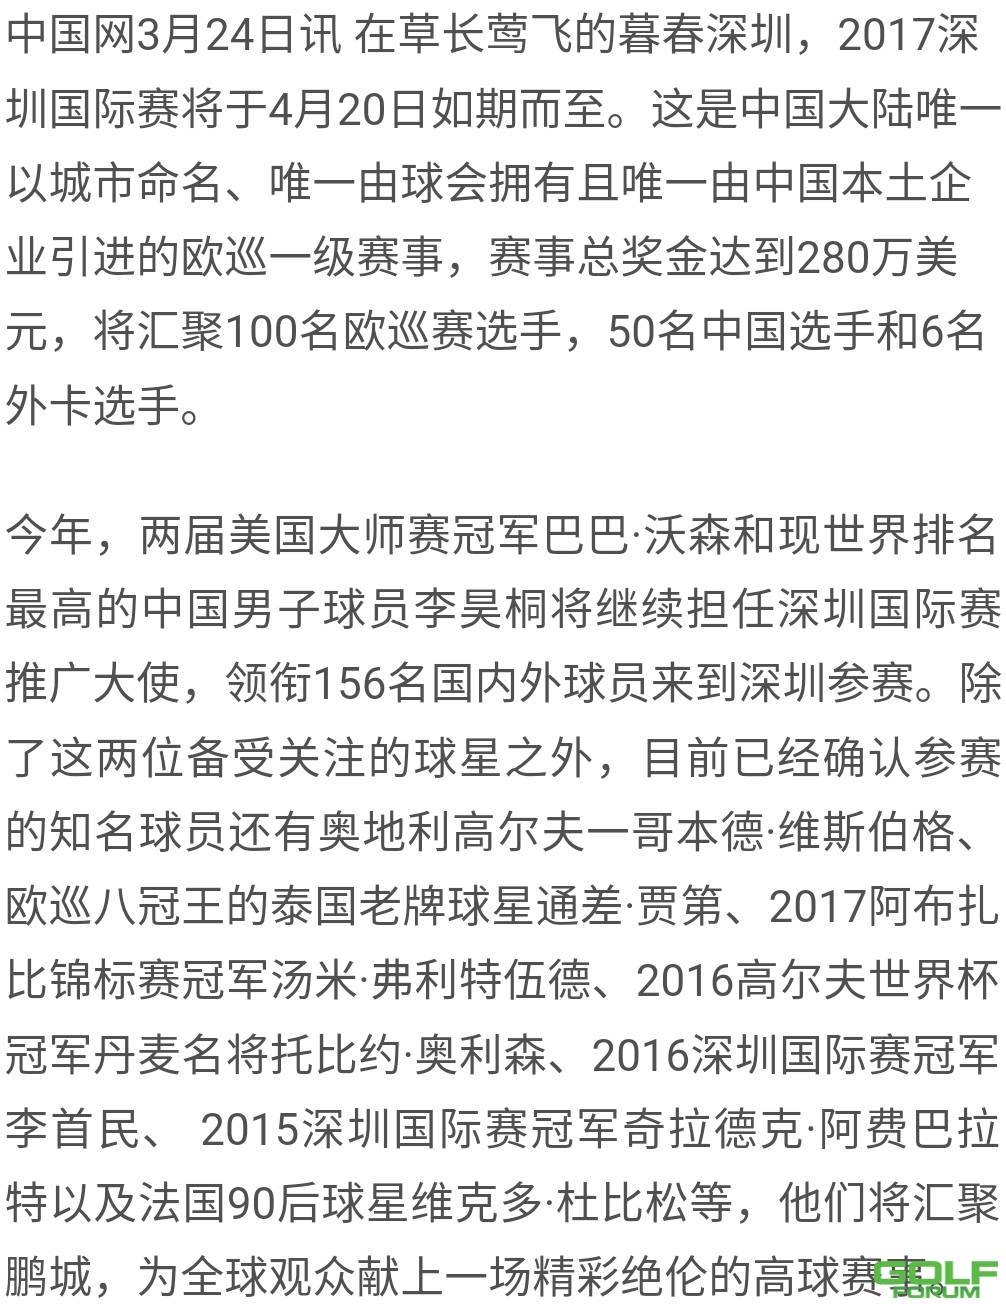 2017年“深圳高尔夫赛”紧锣密鼓筹备，各路高手来势汹汹 ...